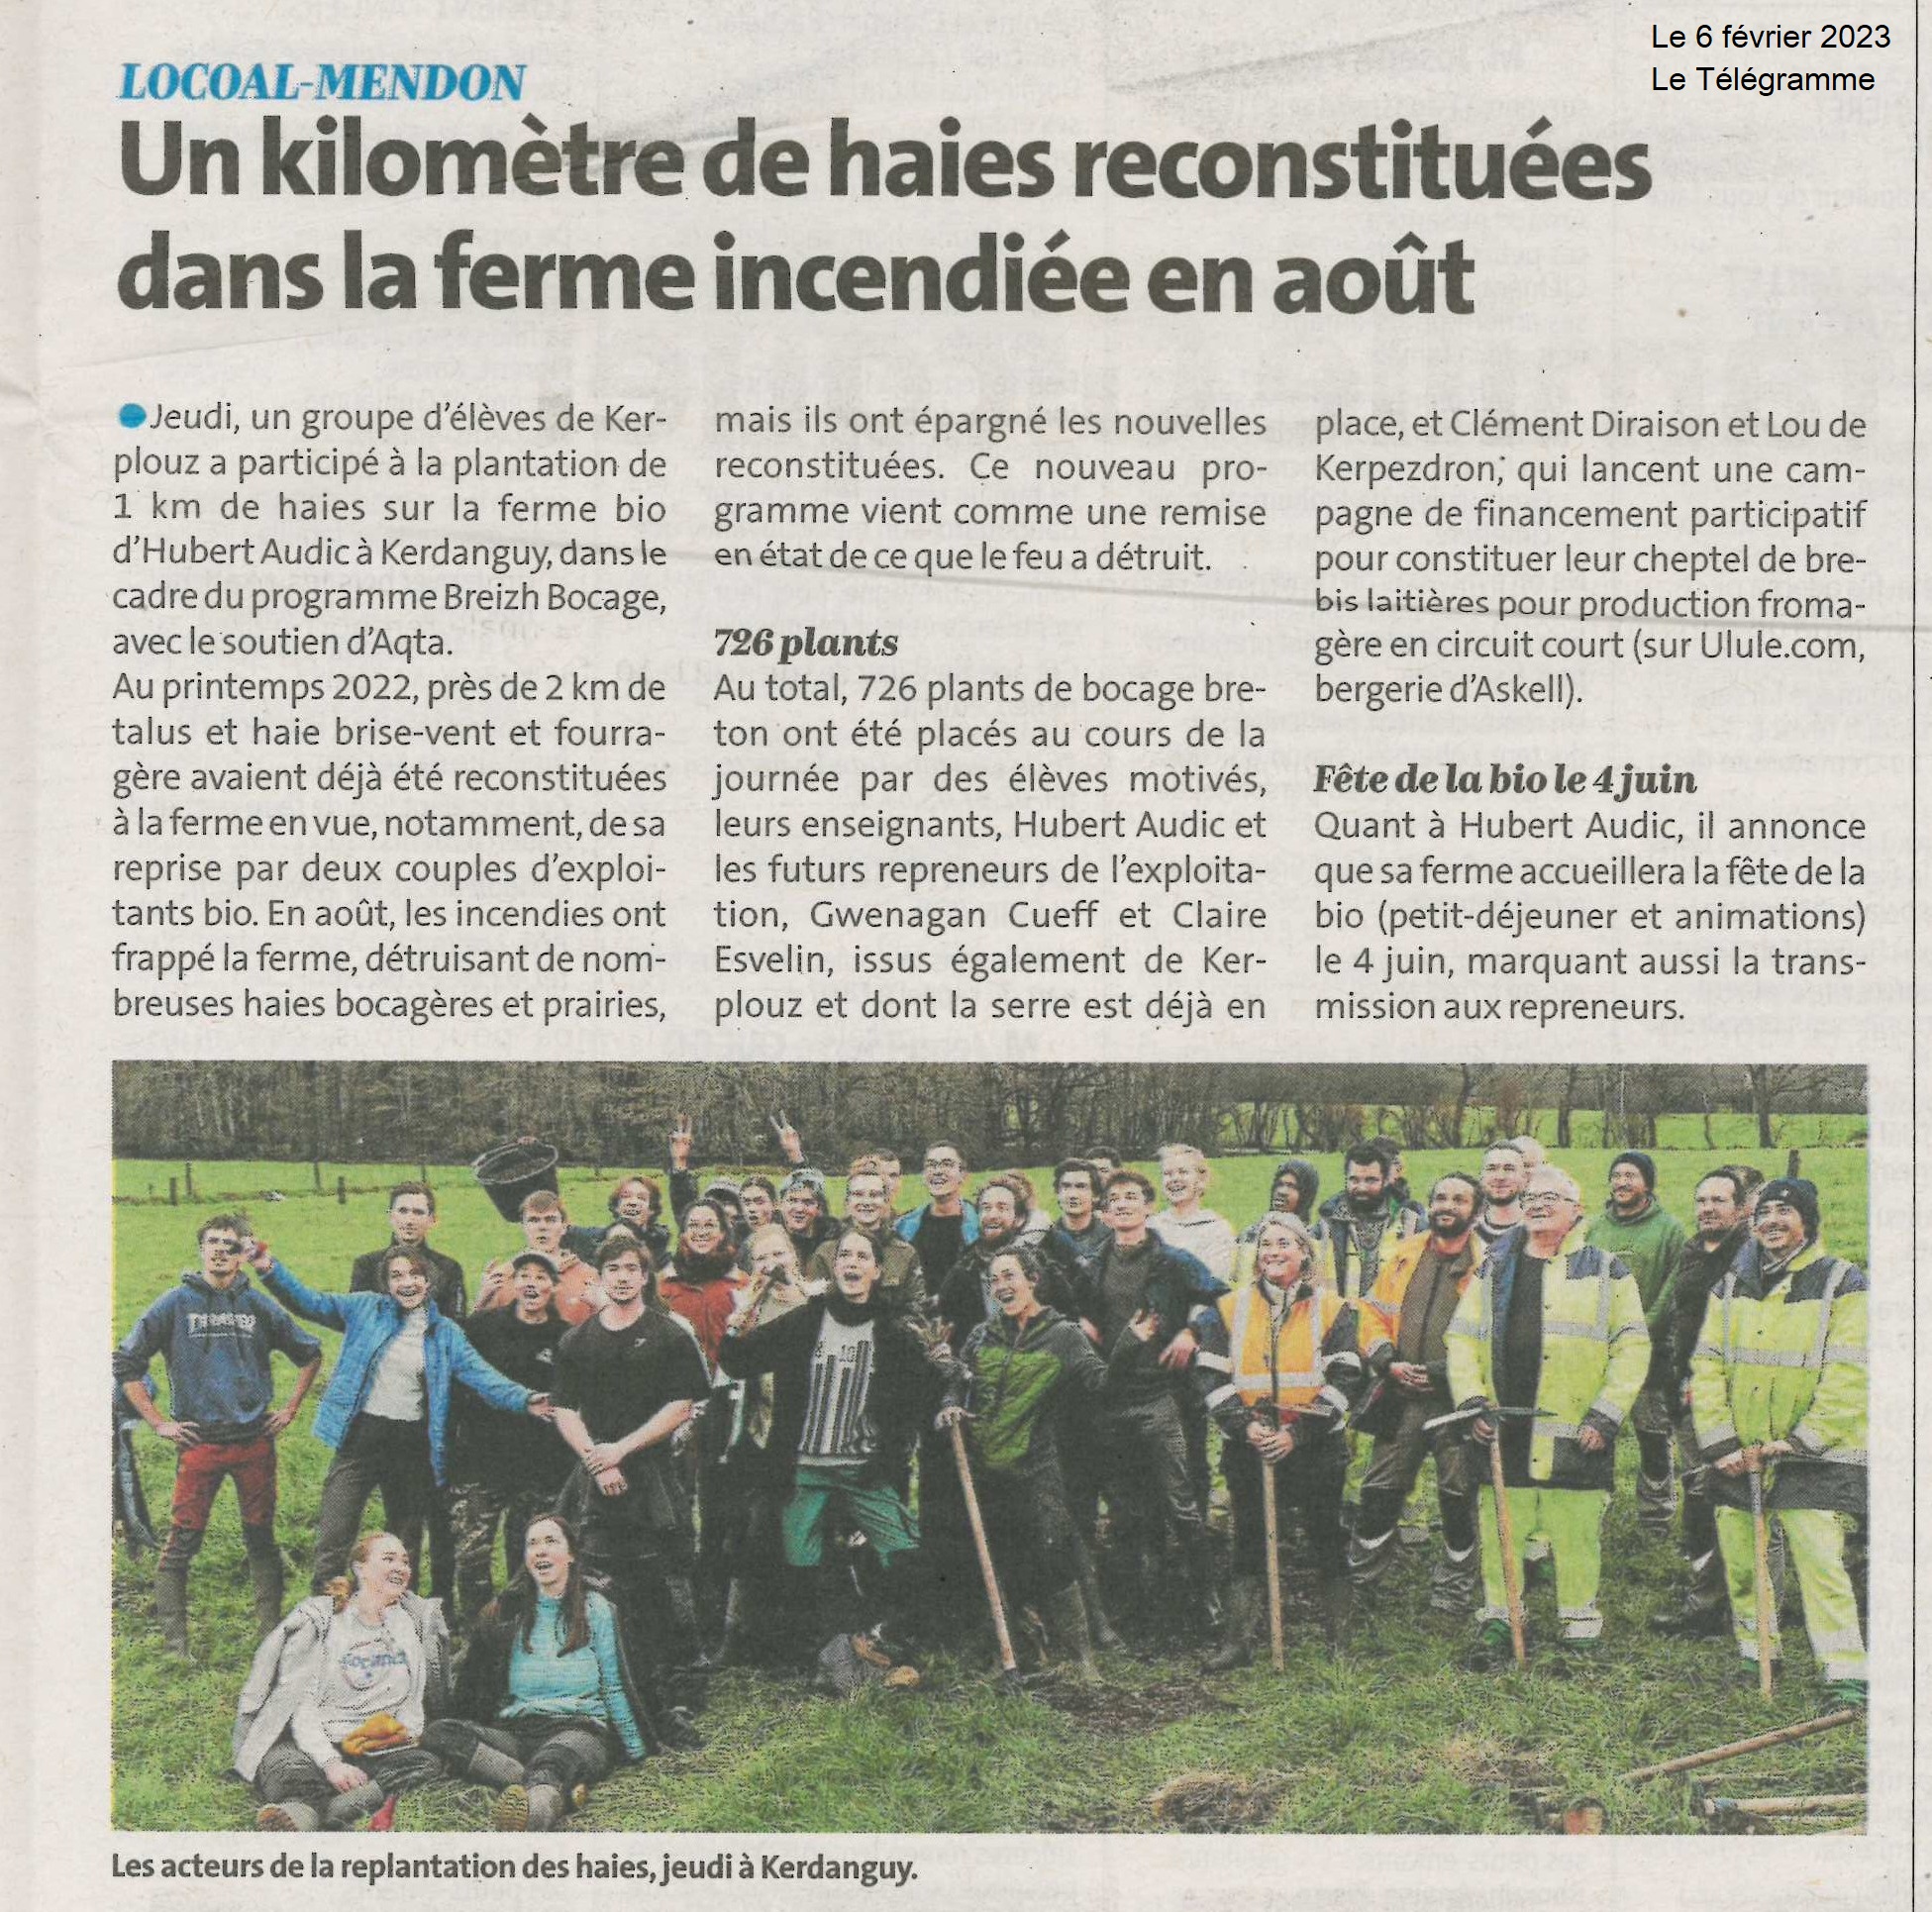 Un kilomètre de haies reconstituées dans la ferme incendiée en août (1 article Le Télégramme + 1 article Ouest France)